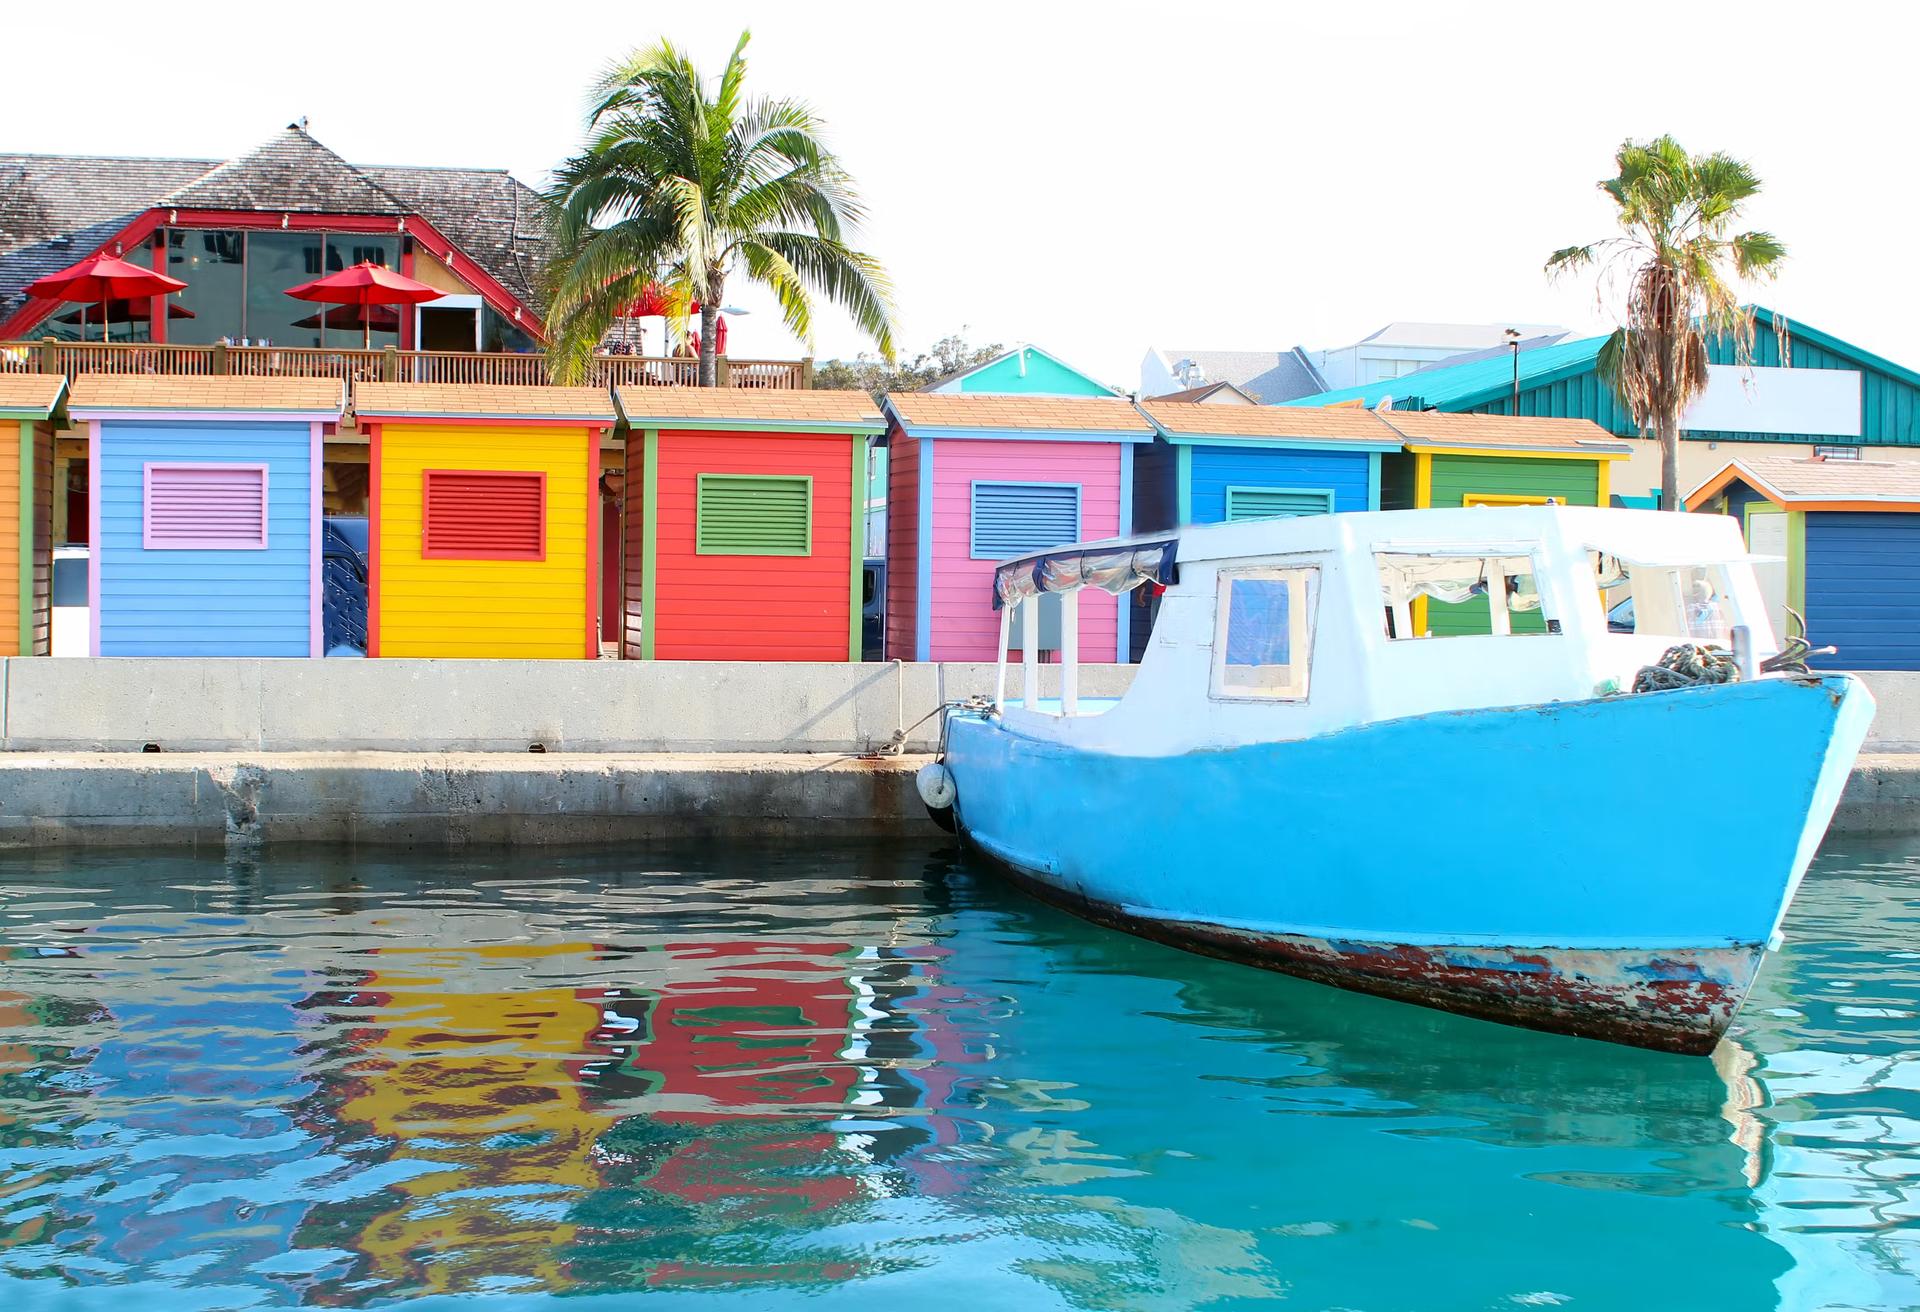 En färgstark bild av området vid vattnet i centrala Nassau som visar en vattentaxi och flera hyddor